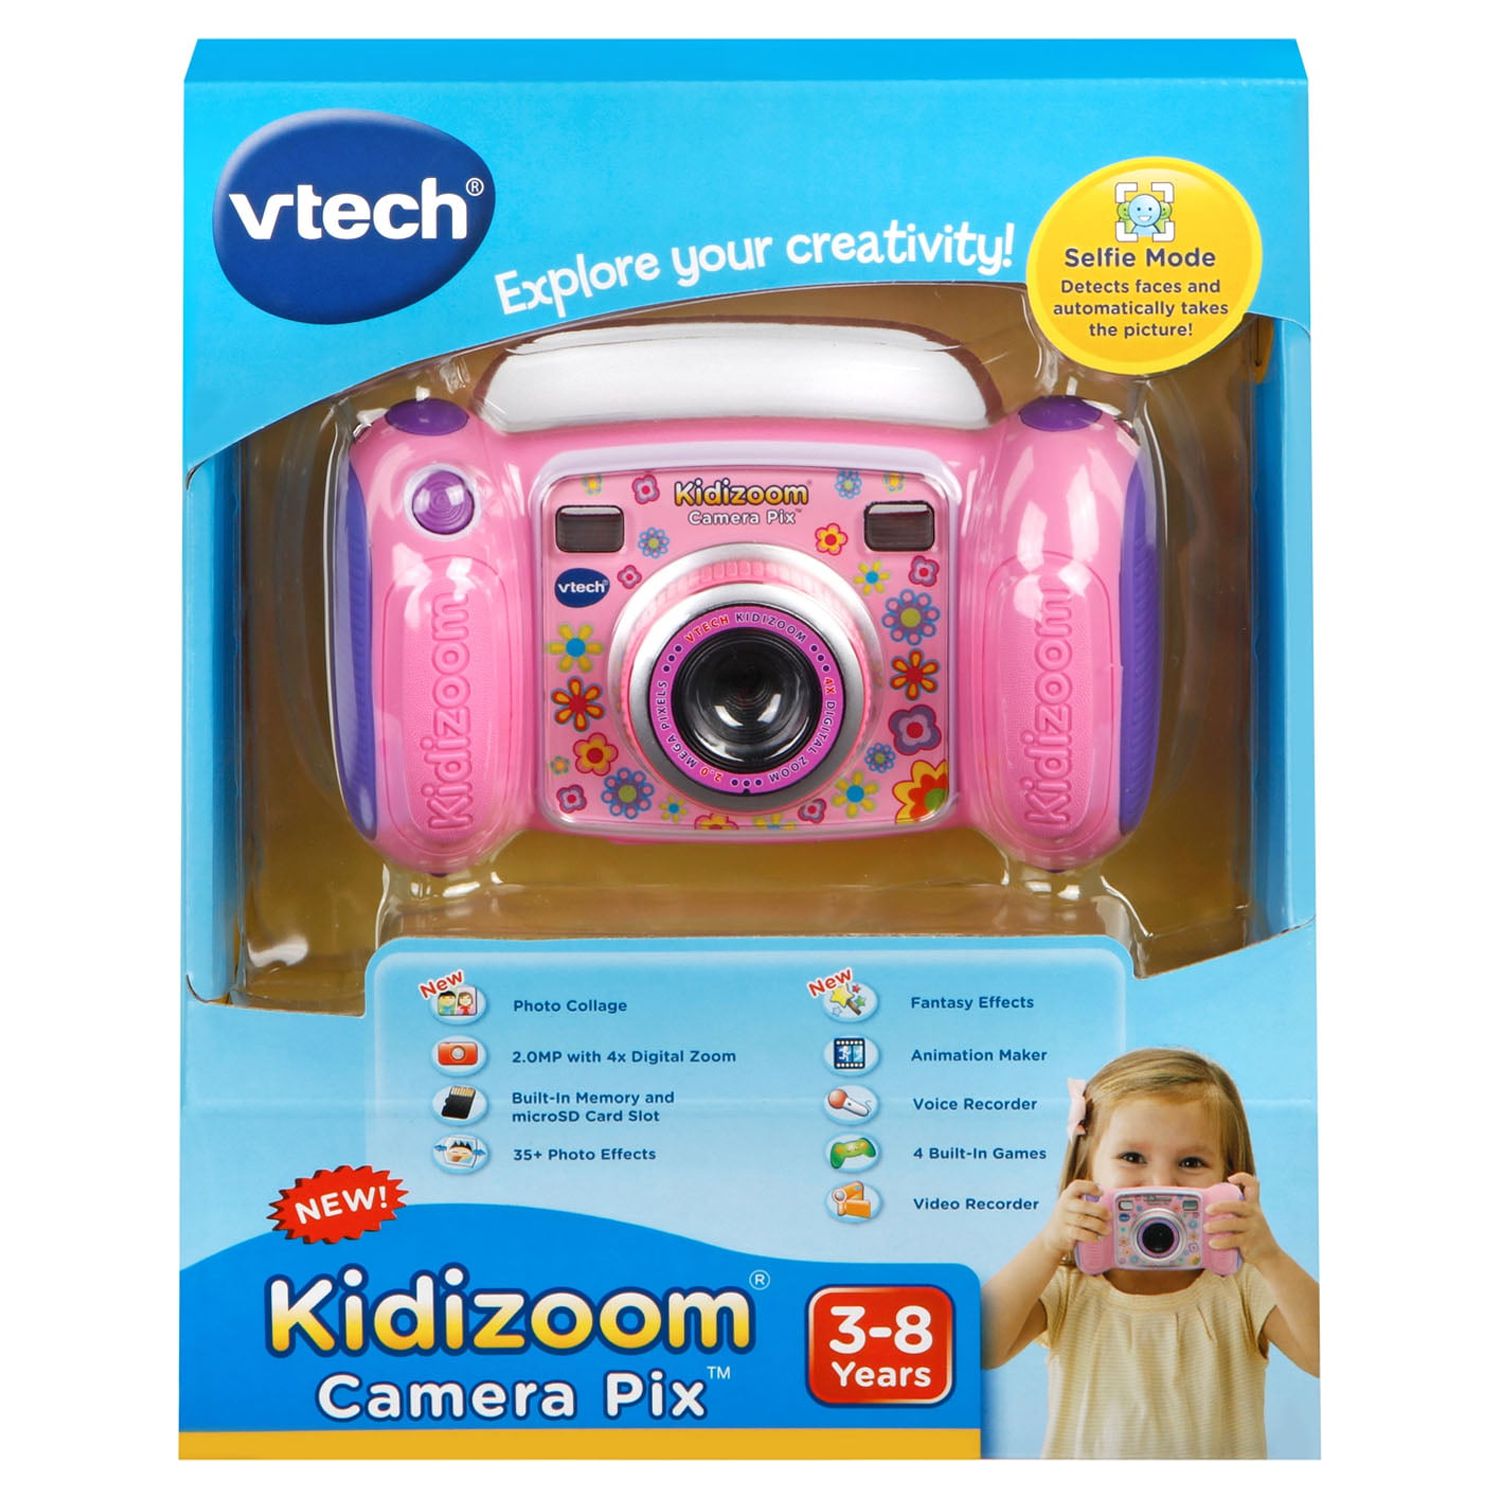 VTech KidiZoom Camera Pix, Real Digital Camera for Kids, Pink - image 3 of 9